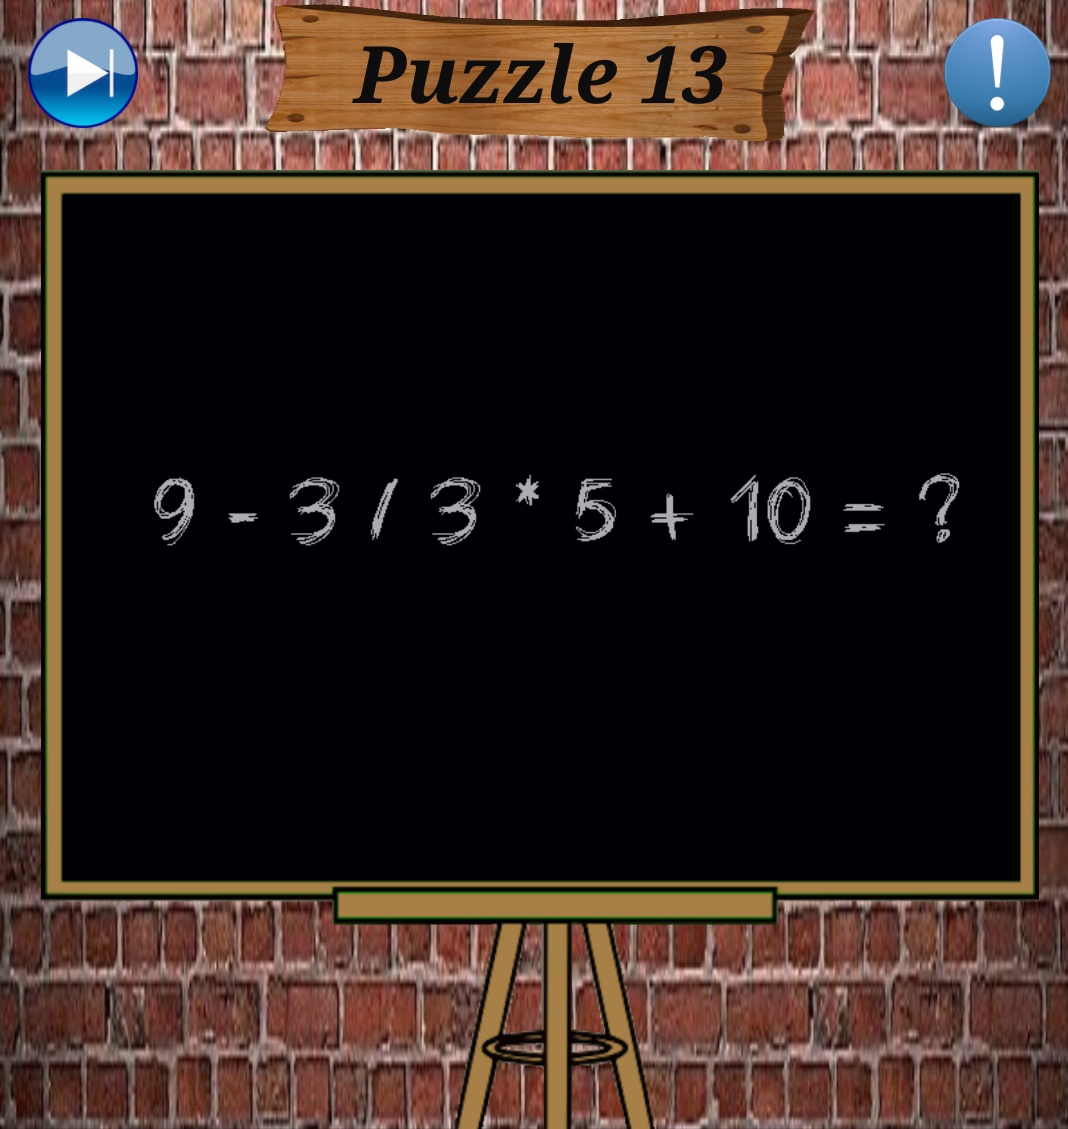 Screenshot_٢٠١٩-٠٧-١٠-٠٣-٢٧-٢٤-٧٧٢_com.applabs.puzzle